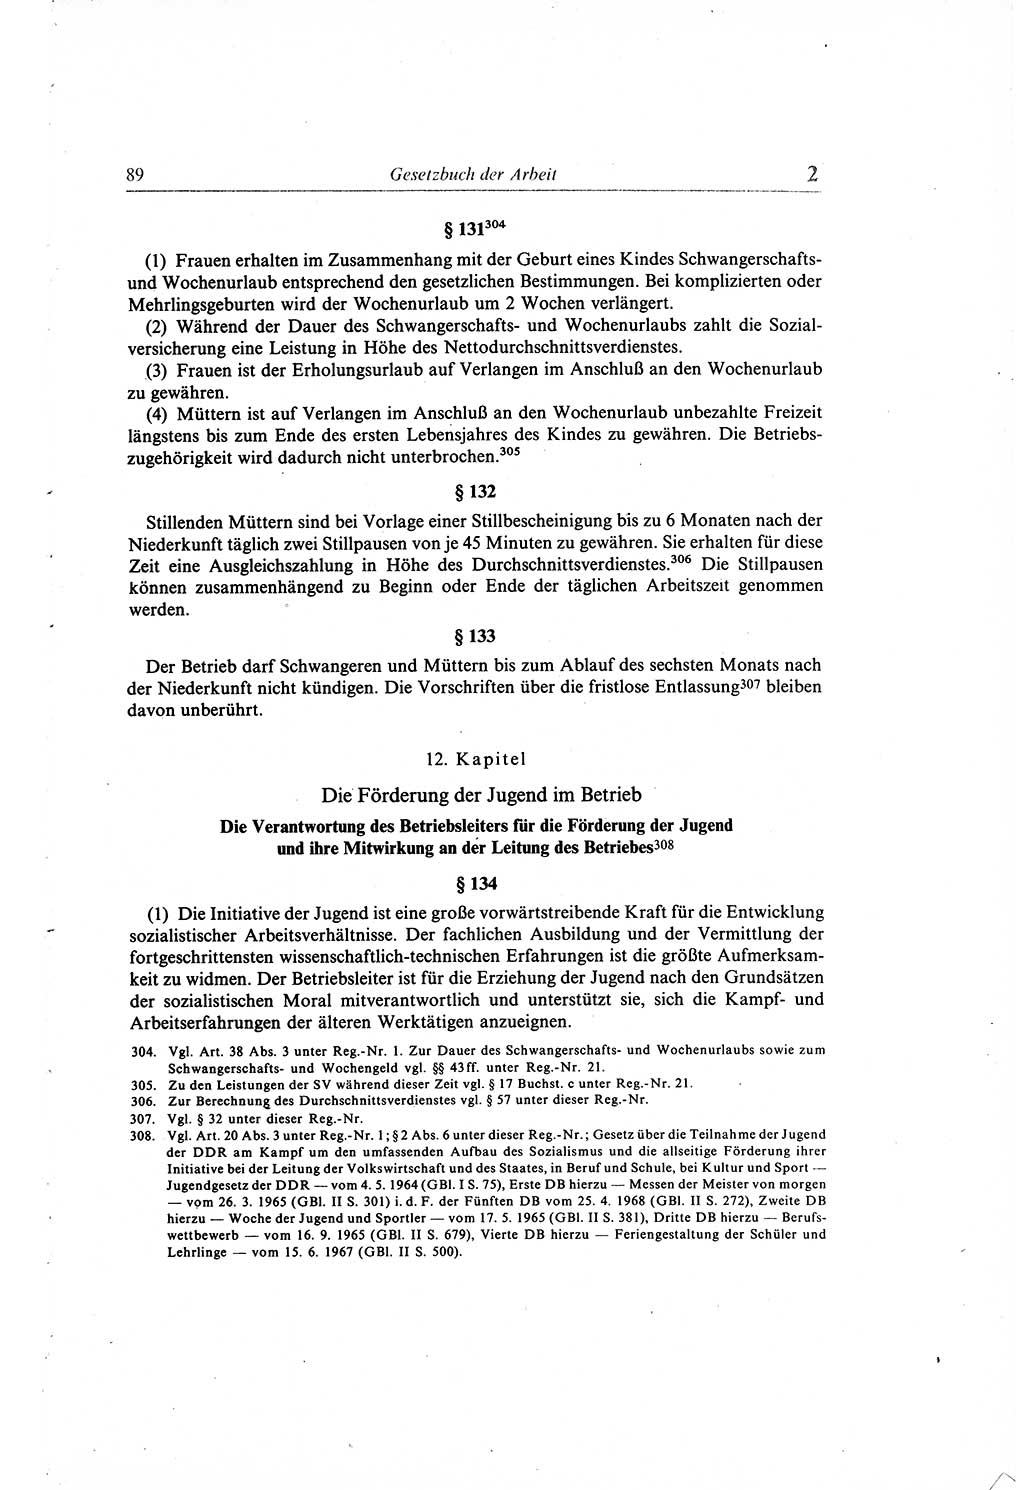 Gesetzbuch der Arbeit (GBA) und andere ausgewählte rechtliche Bestimmungen [Deutsche Demokratische Republik (DDR)] 1968, Seite 89 (GBA DDR 1968, S. 89)